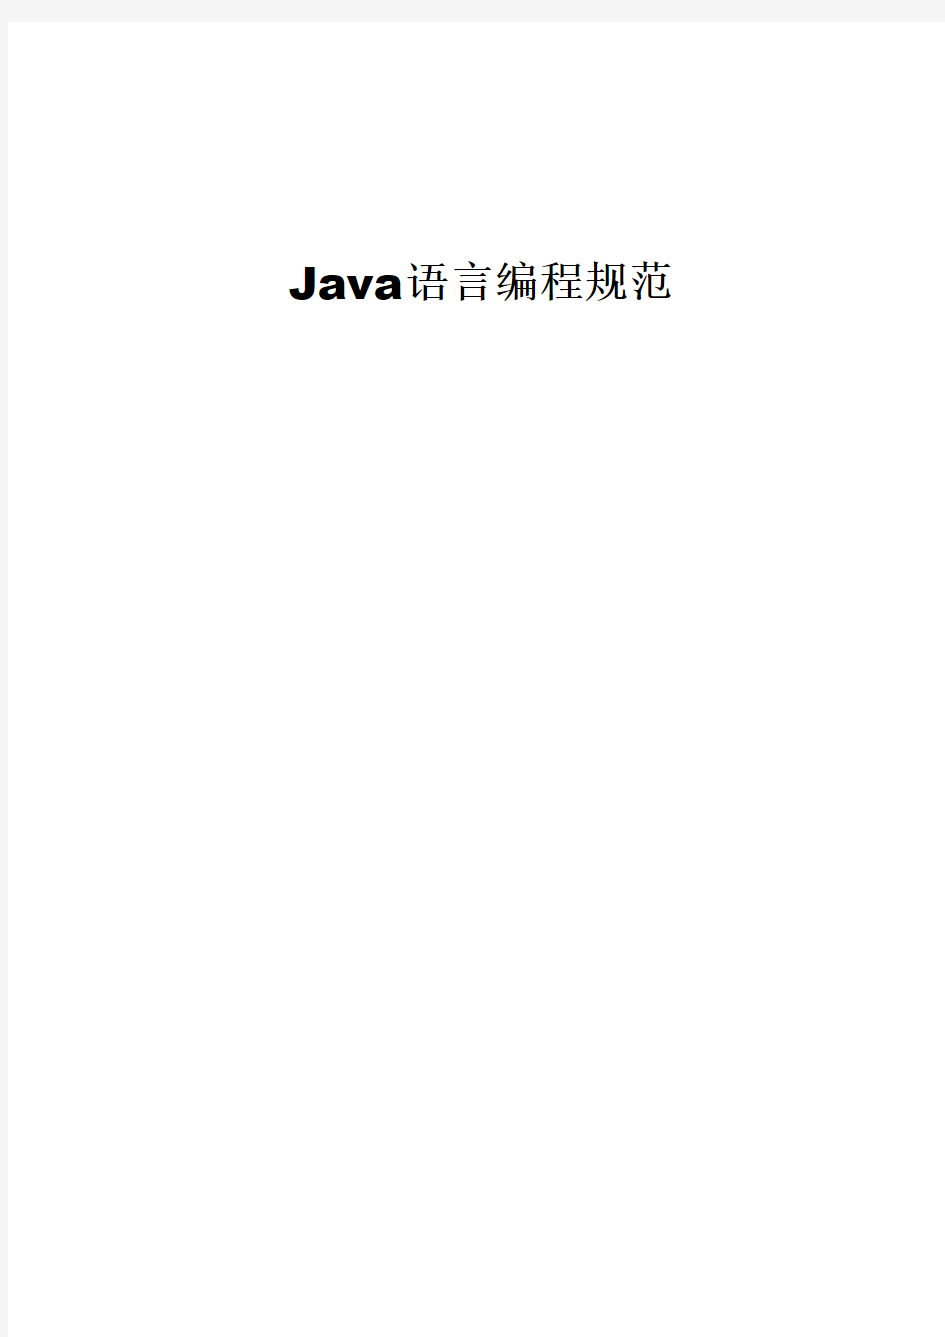 Java 语言编程规范